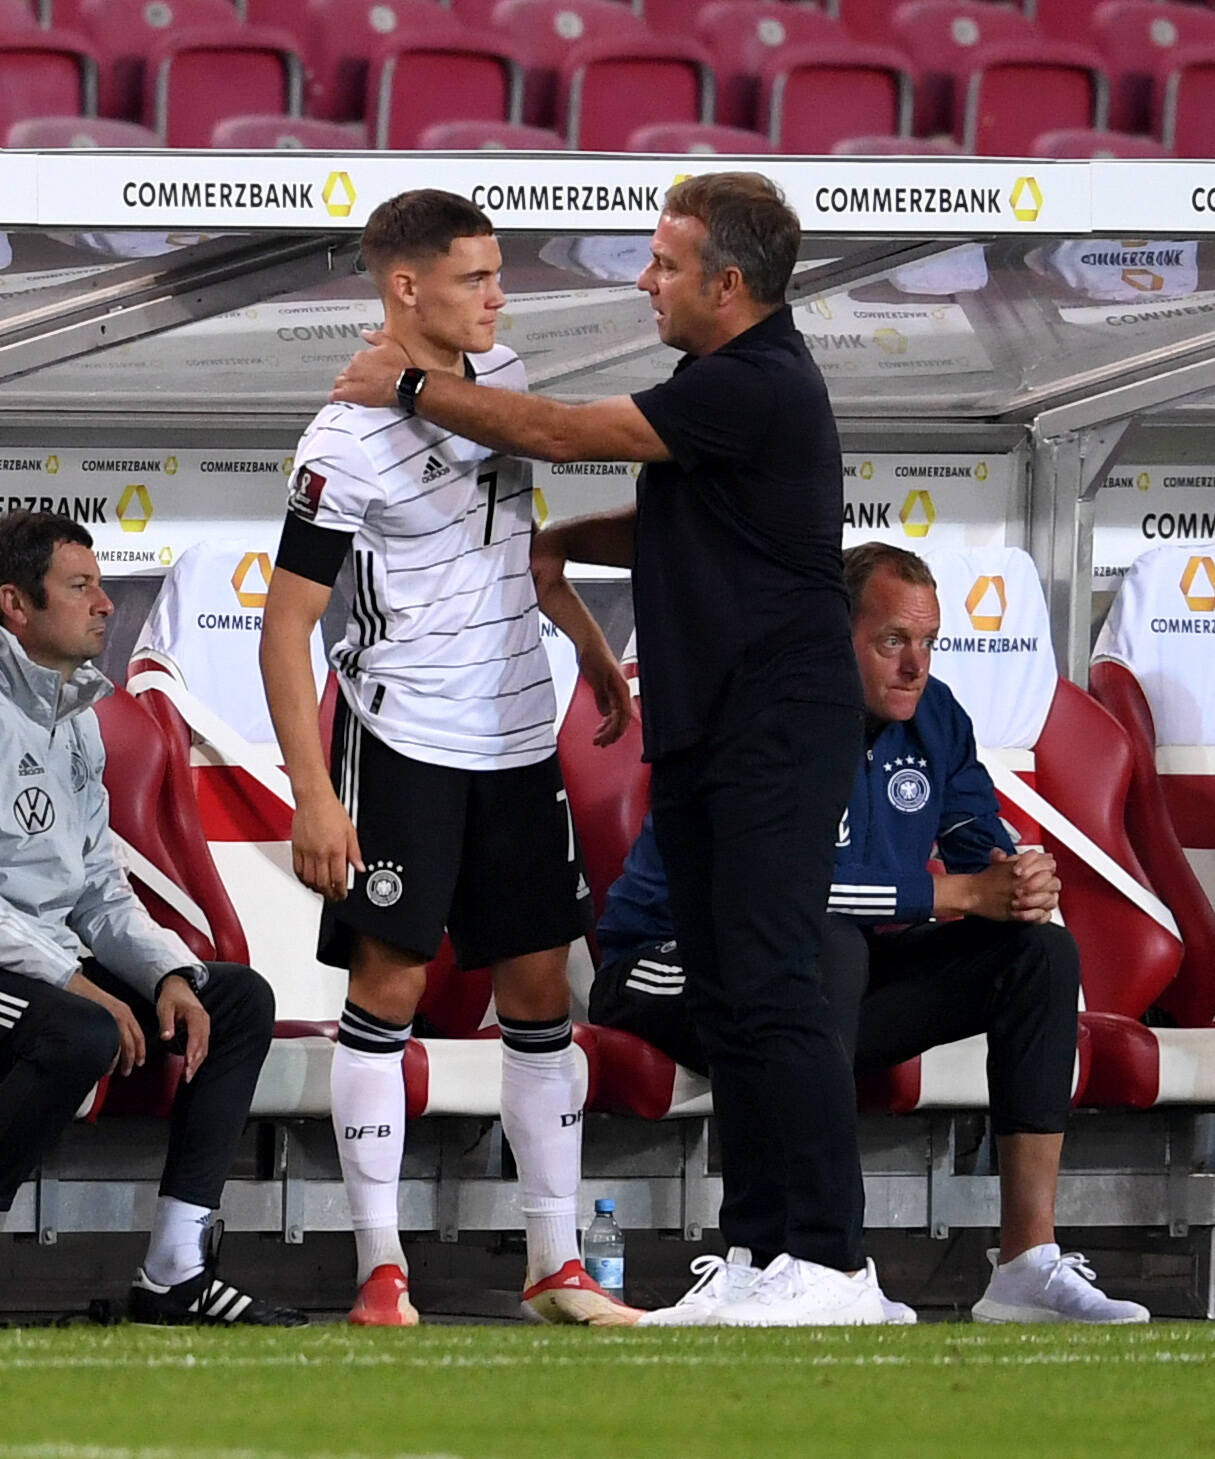 Aufmunterung nach der Schock-Diagnose: Bundestrainer Hansi Flick rief bei Florian Wirtz an.